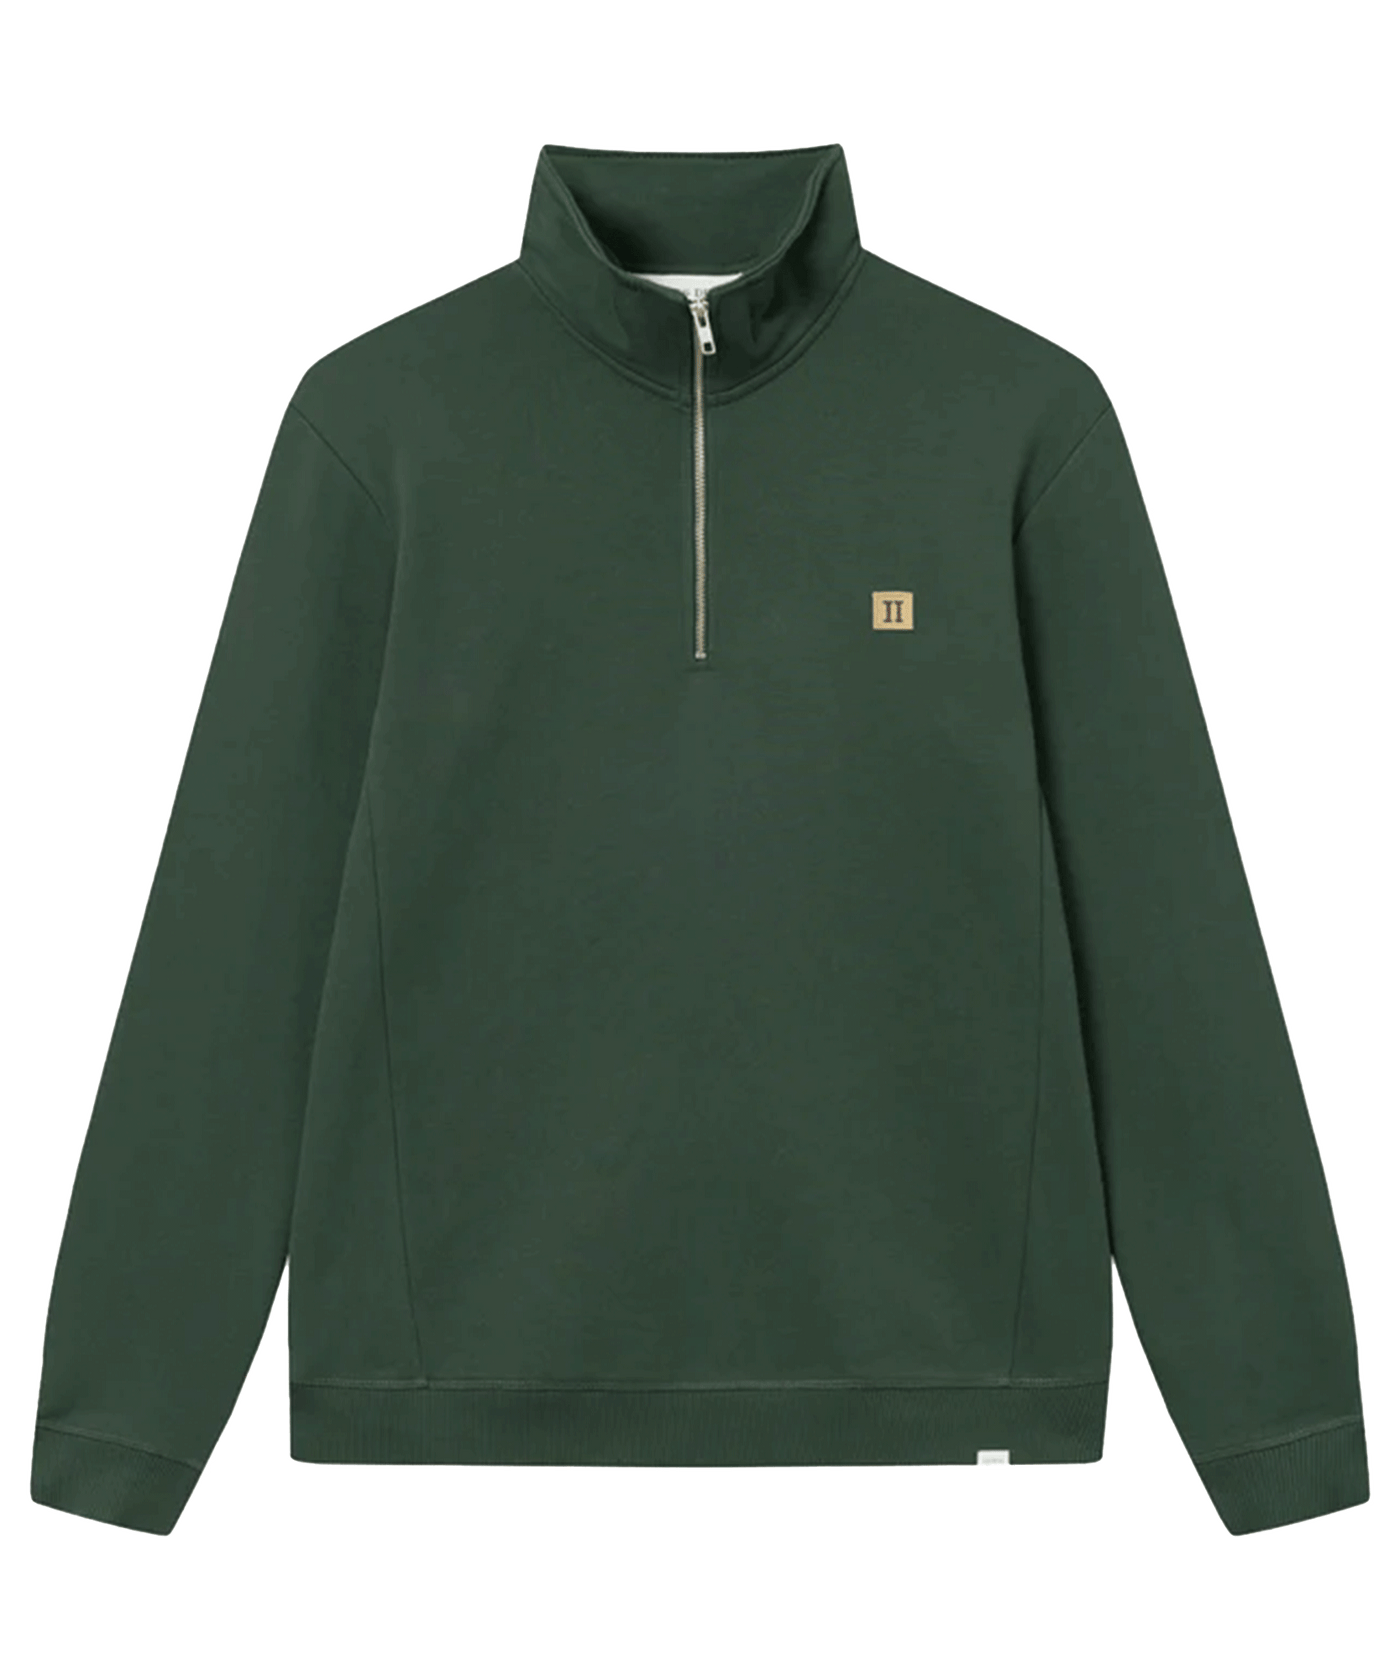 Les Deux - Ldm200144 - Piece Half Zip Sweater - Pine Green